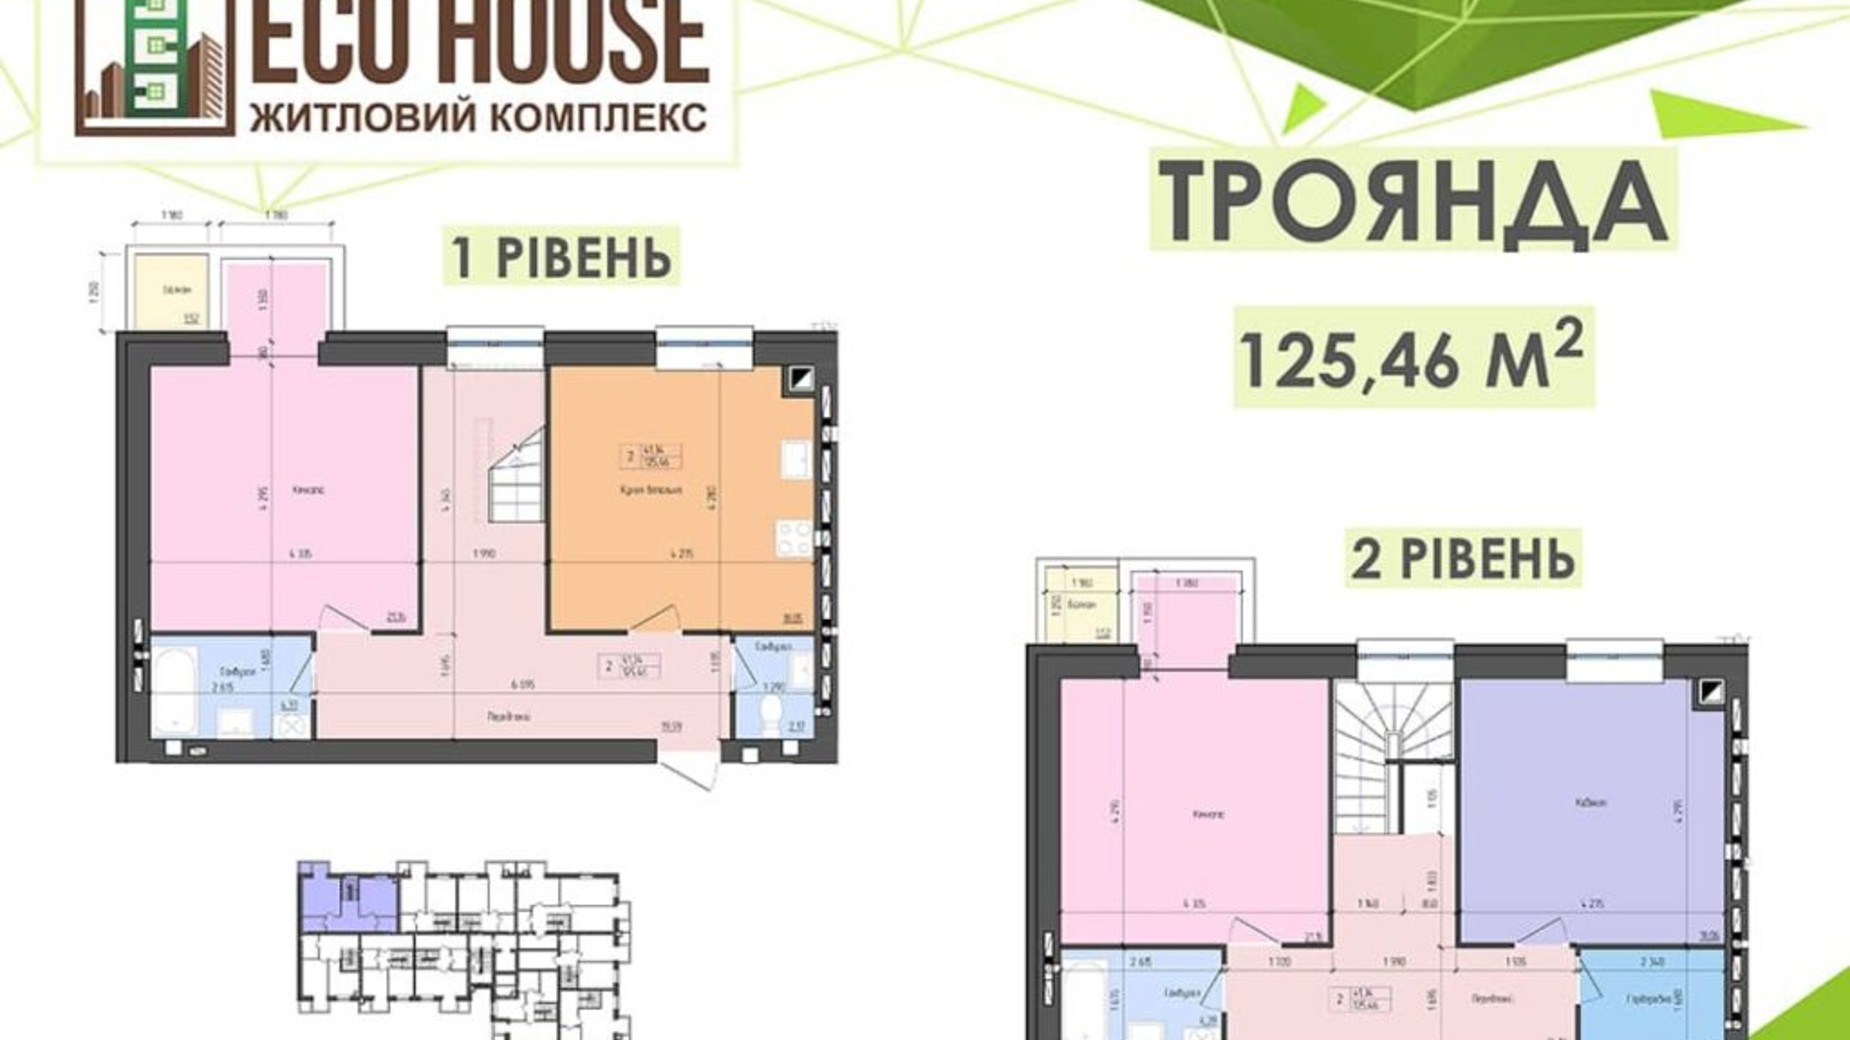 Планировка много­уровневой квартиры в ЖК Eco House 128.3 м², фото 571626